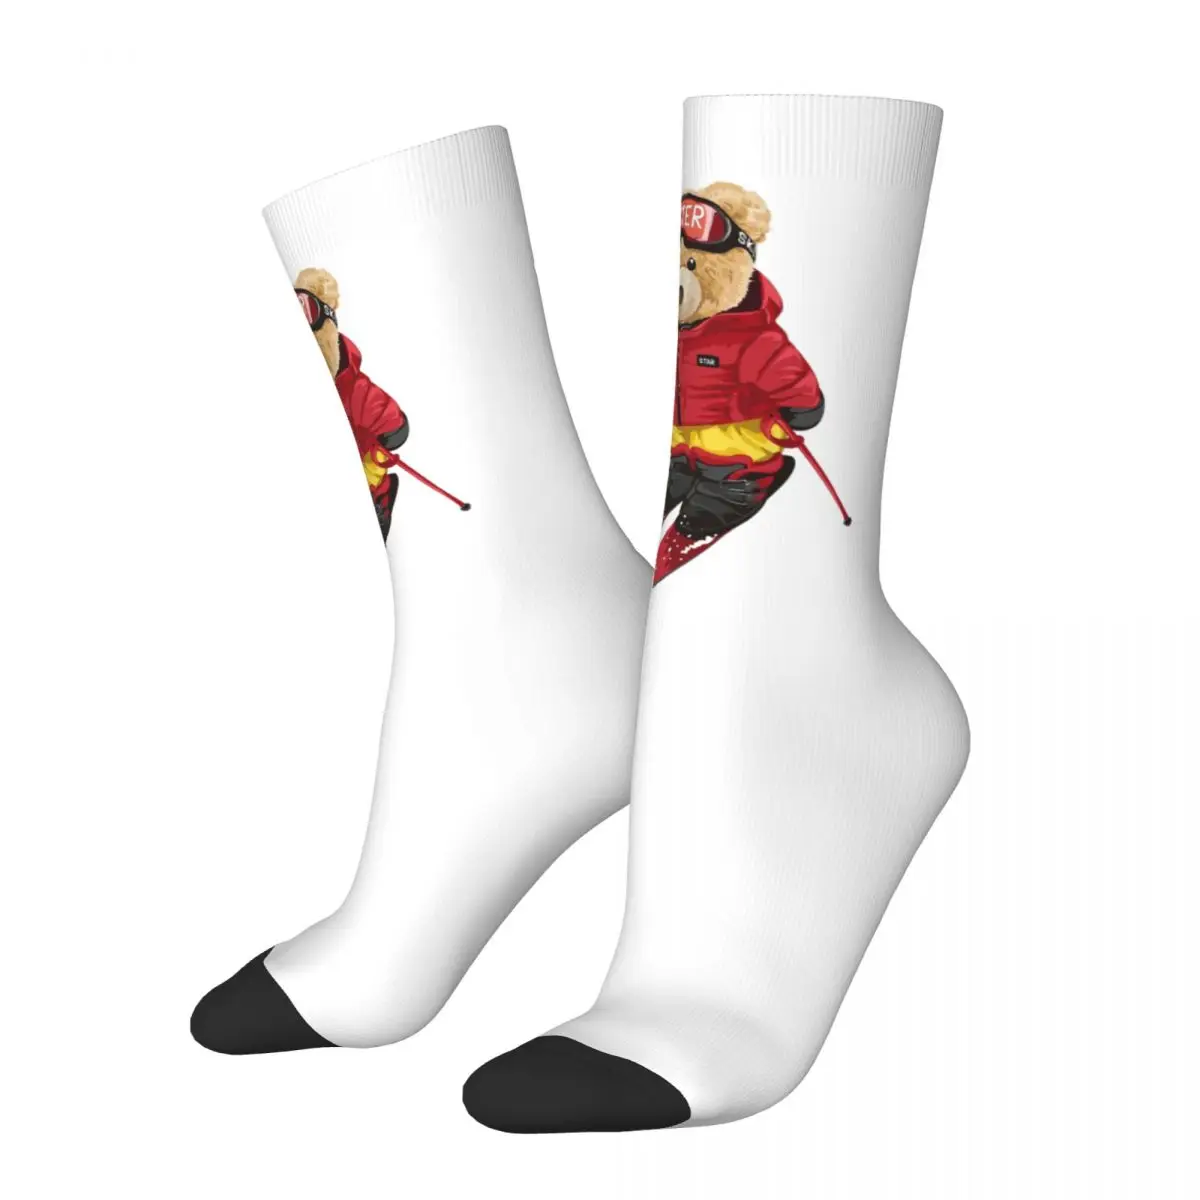 носки унисекс kiss band anji john велосипедные счастливые носки с 3d принтом сумасшедшие носки в уличном стиле Носки Teddy Bear унисекс, походные счастливые носки с 3D принтом, сумасшедшие носки в уличном стиле